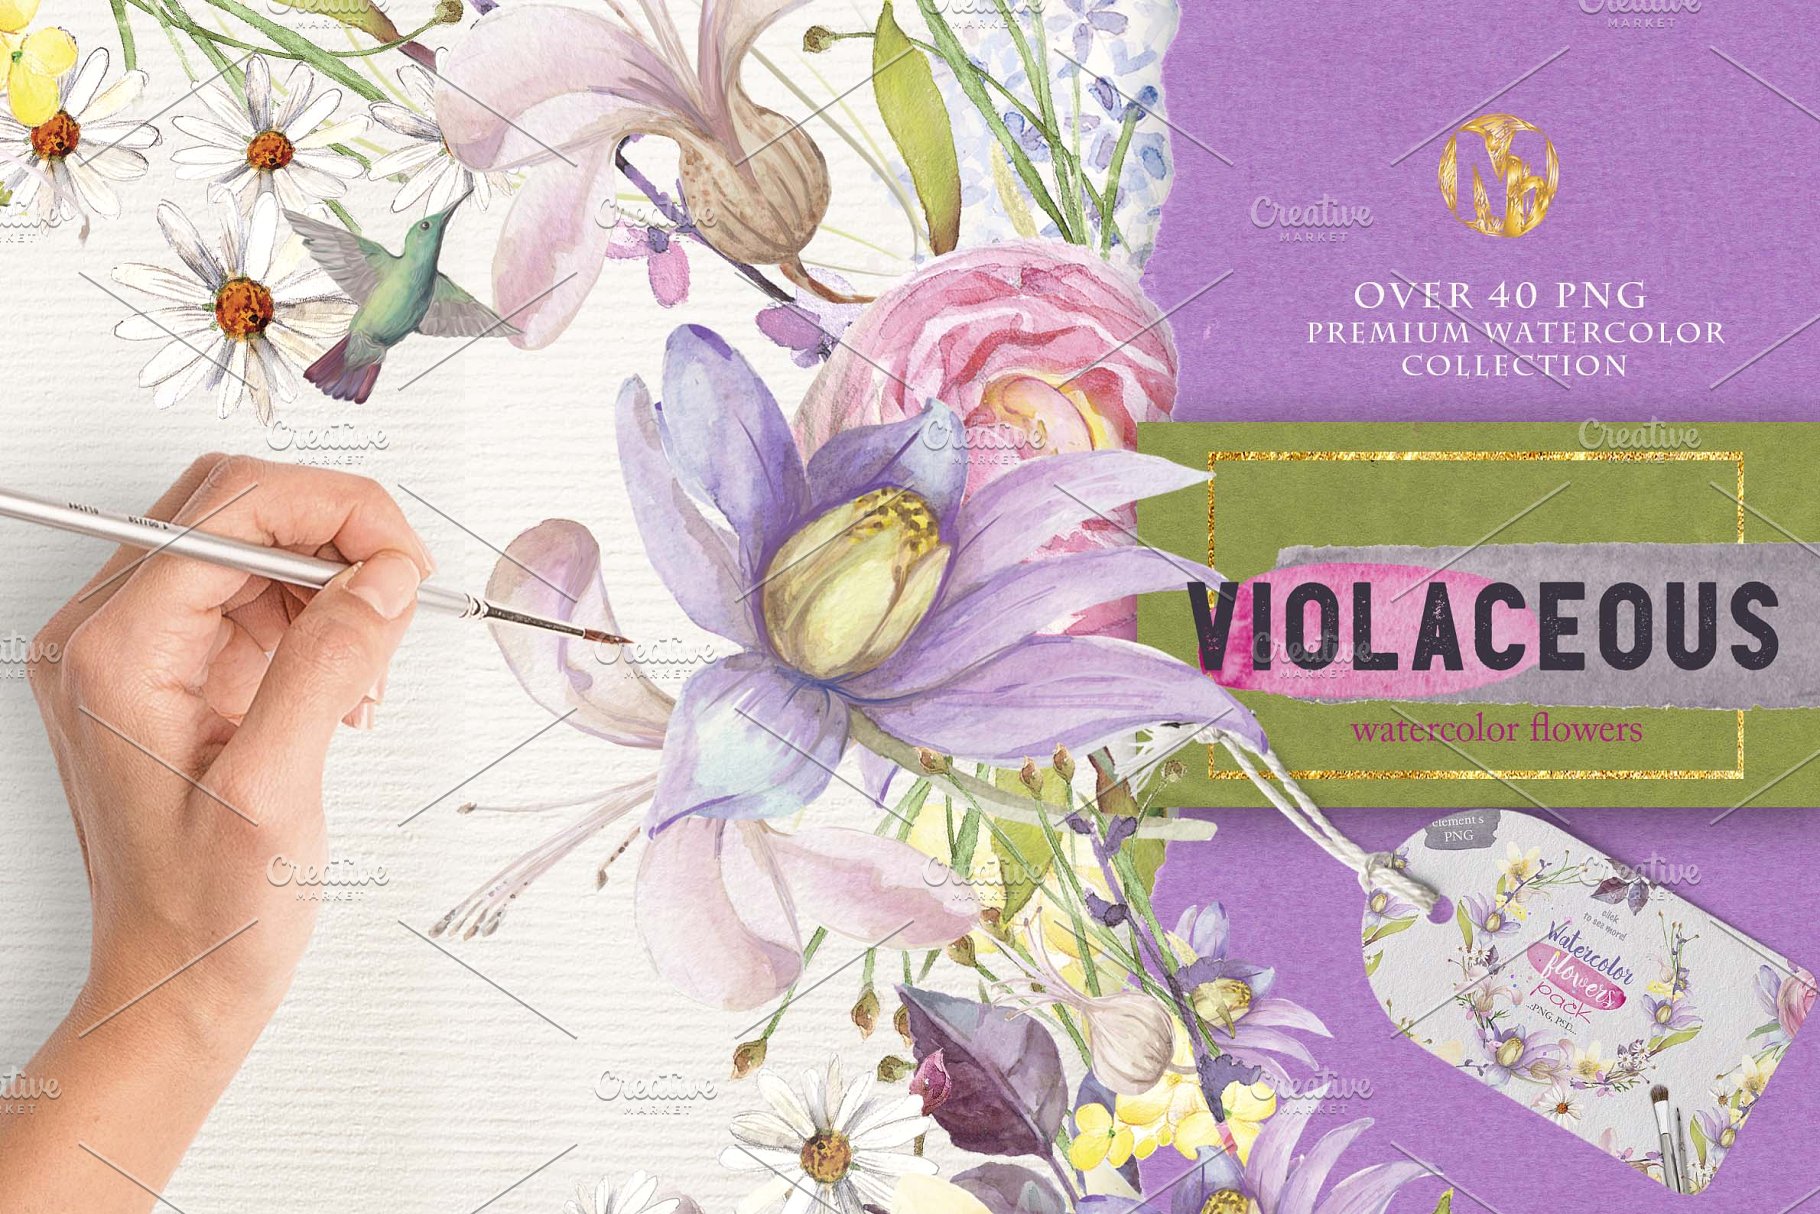 紫罗兰色水彩花卉插画素材 Violaceous watercolors插图